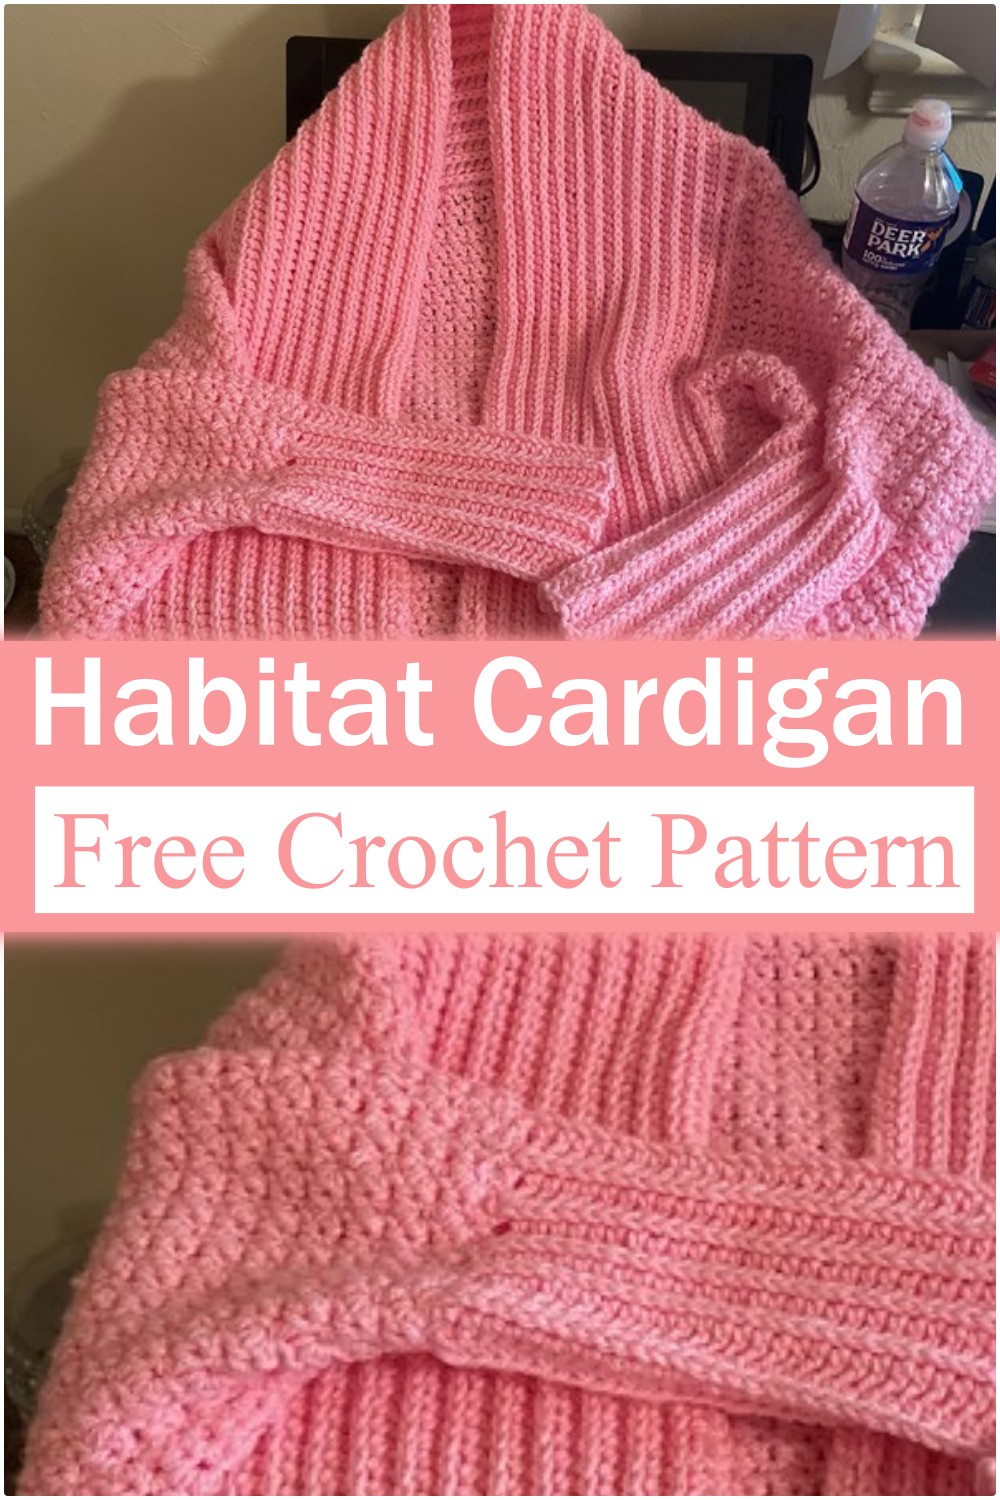 Habitat Cardigan Crochet Pattern